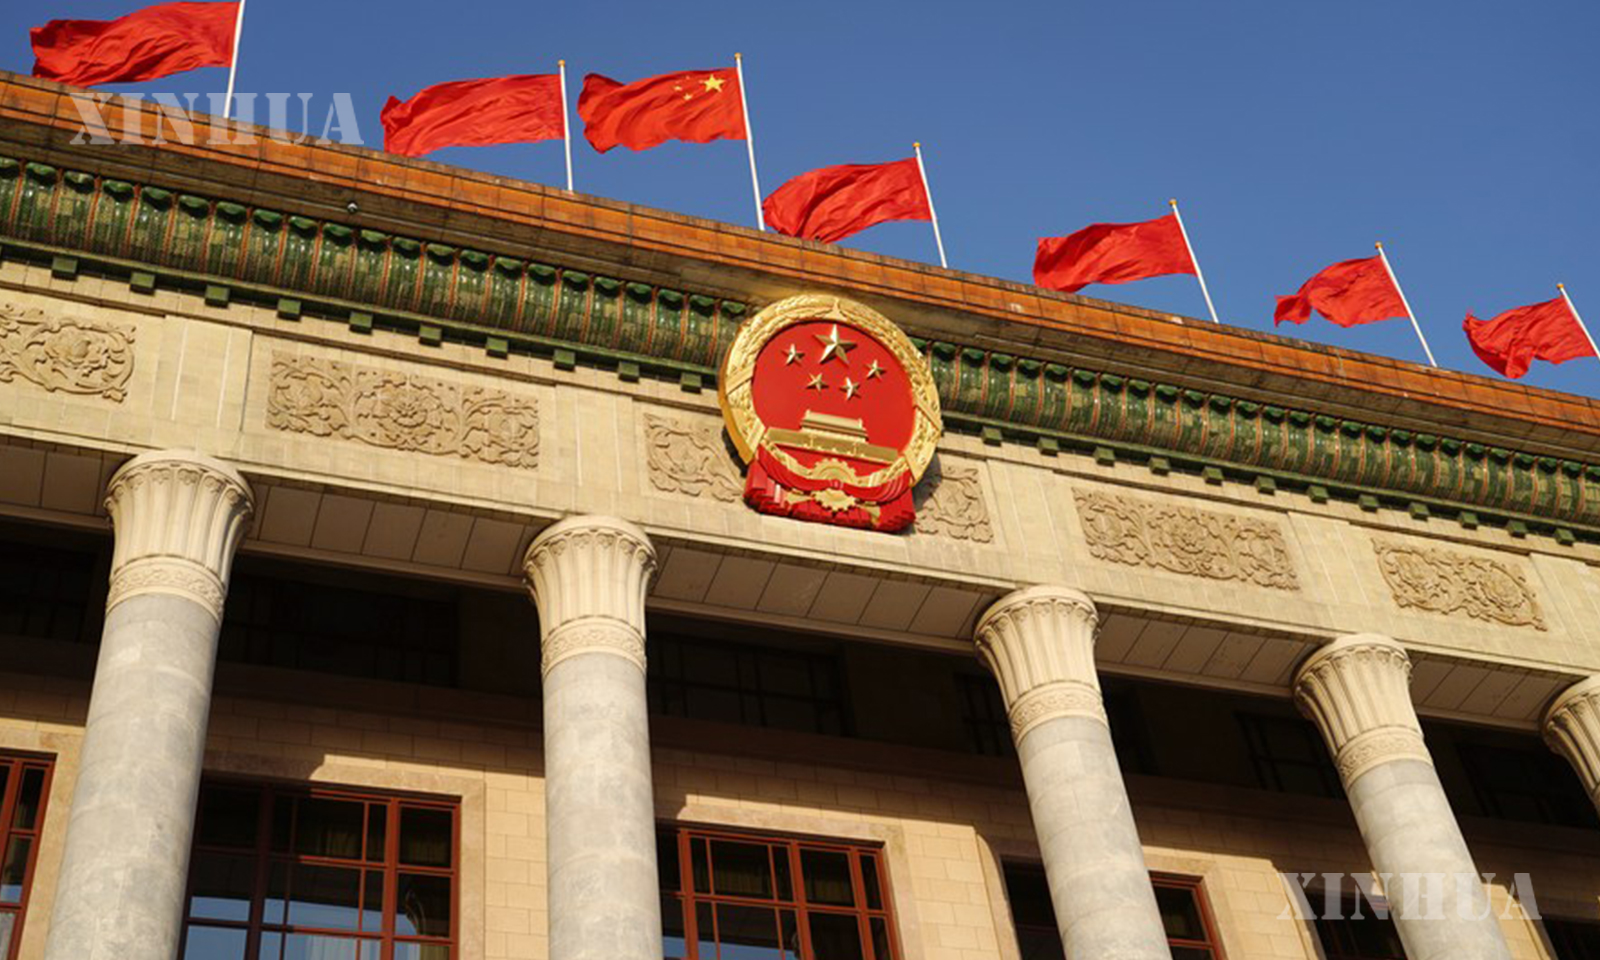 တရုတ်ကွန်မြူနစ်ပါတီ (၂၀) ကြိမ်မြောက် နိုင်ငံလုံးဆိုင်ရာပါတီညီလာခံ ပိတ်ပွဲအစည်းအဝေး ကျင်းပ